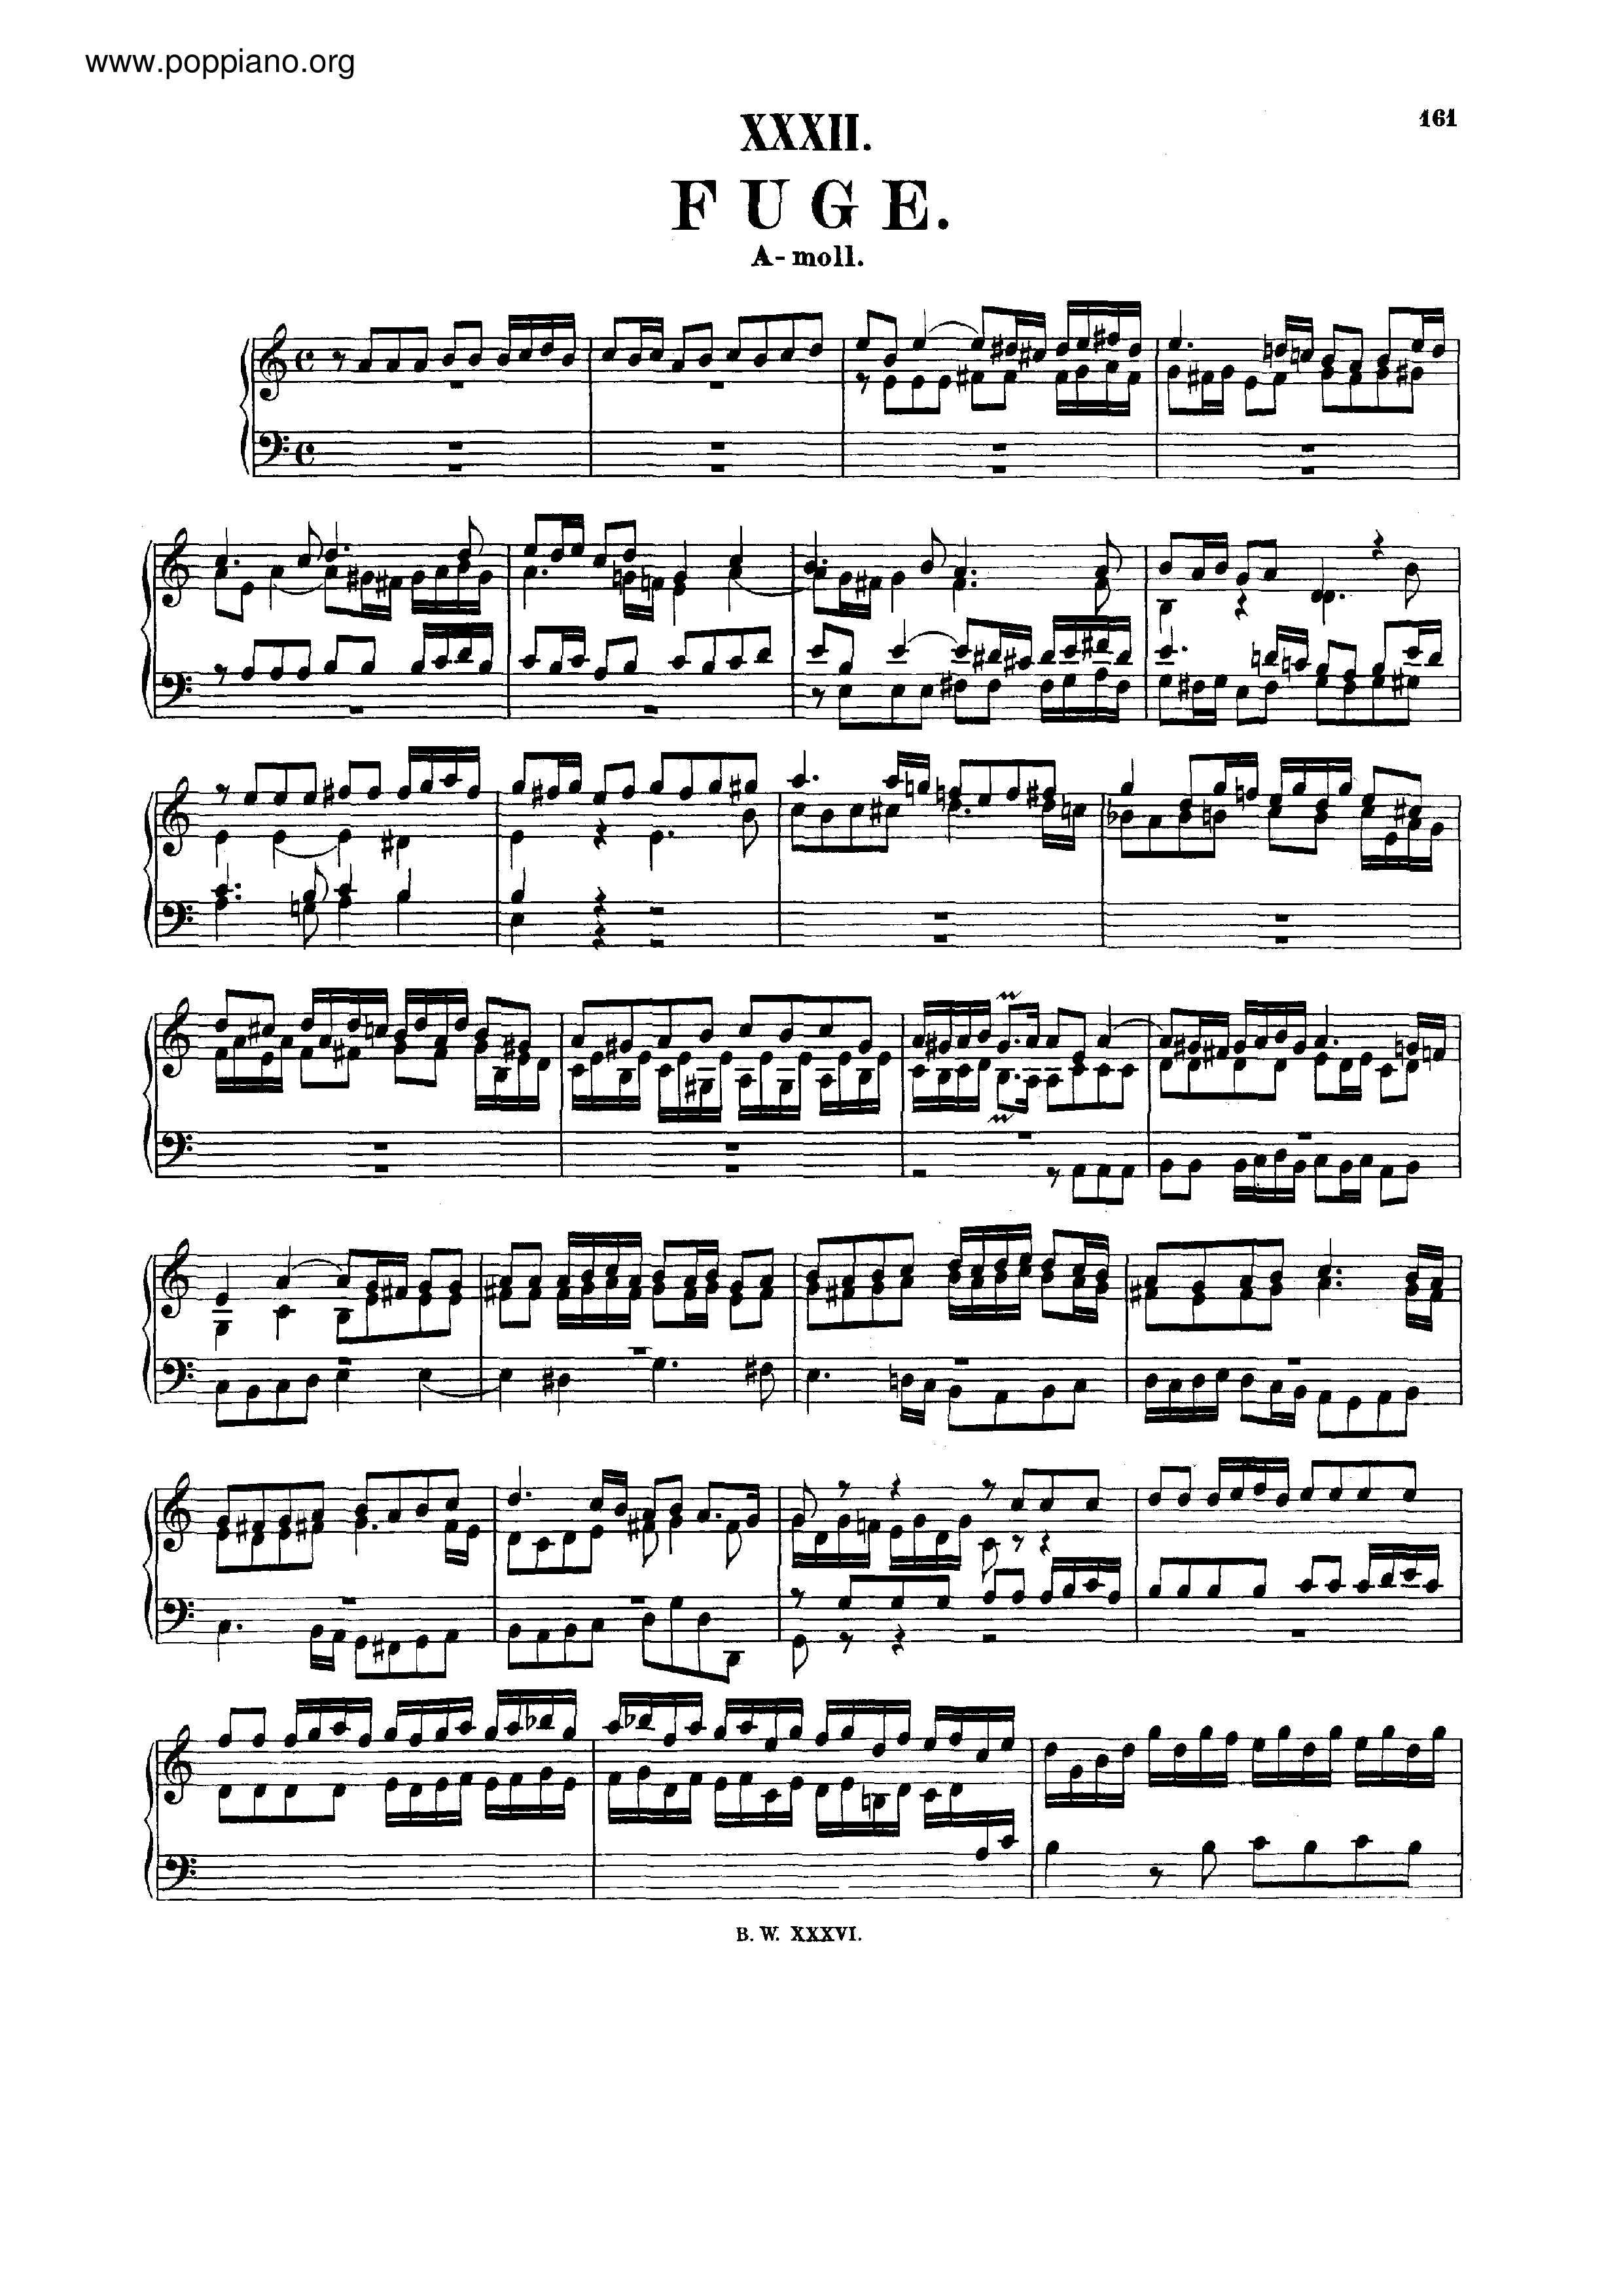 Fugue in A minor, BWV 947 Score